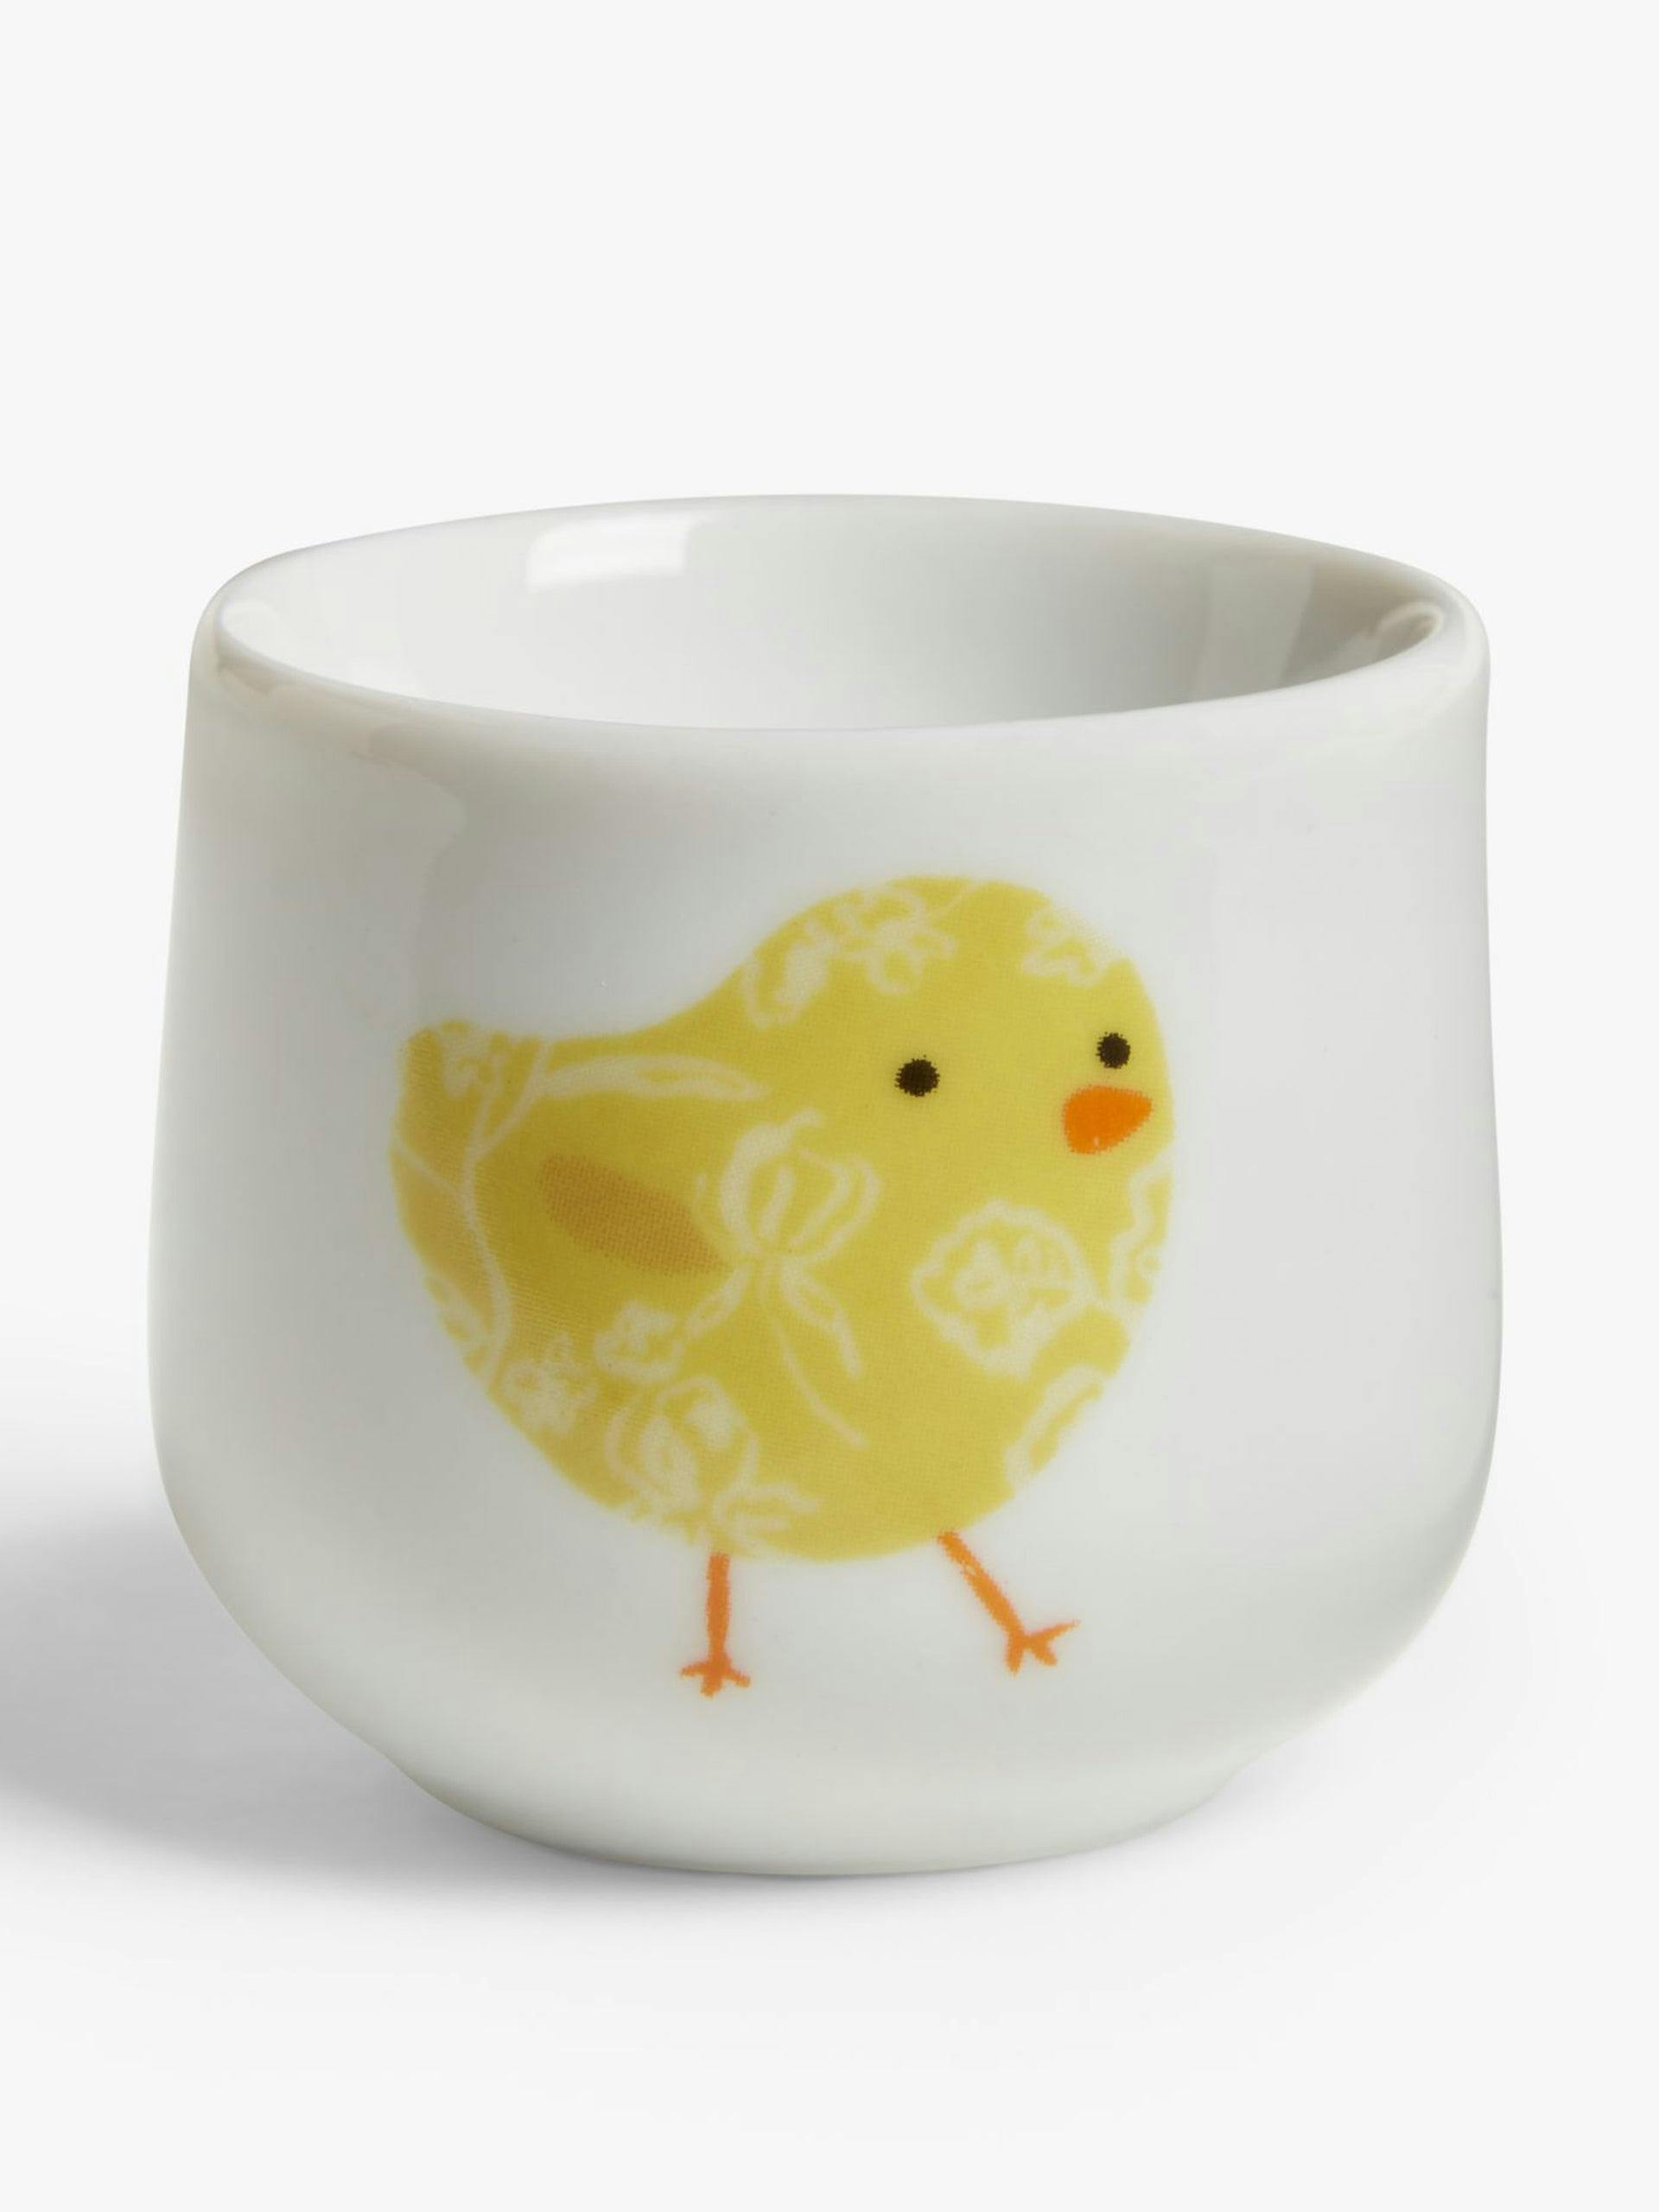 Chick porcelain egg cup